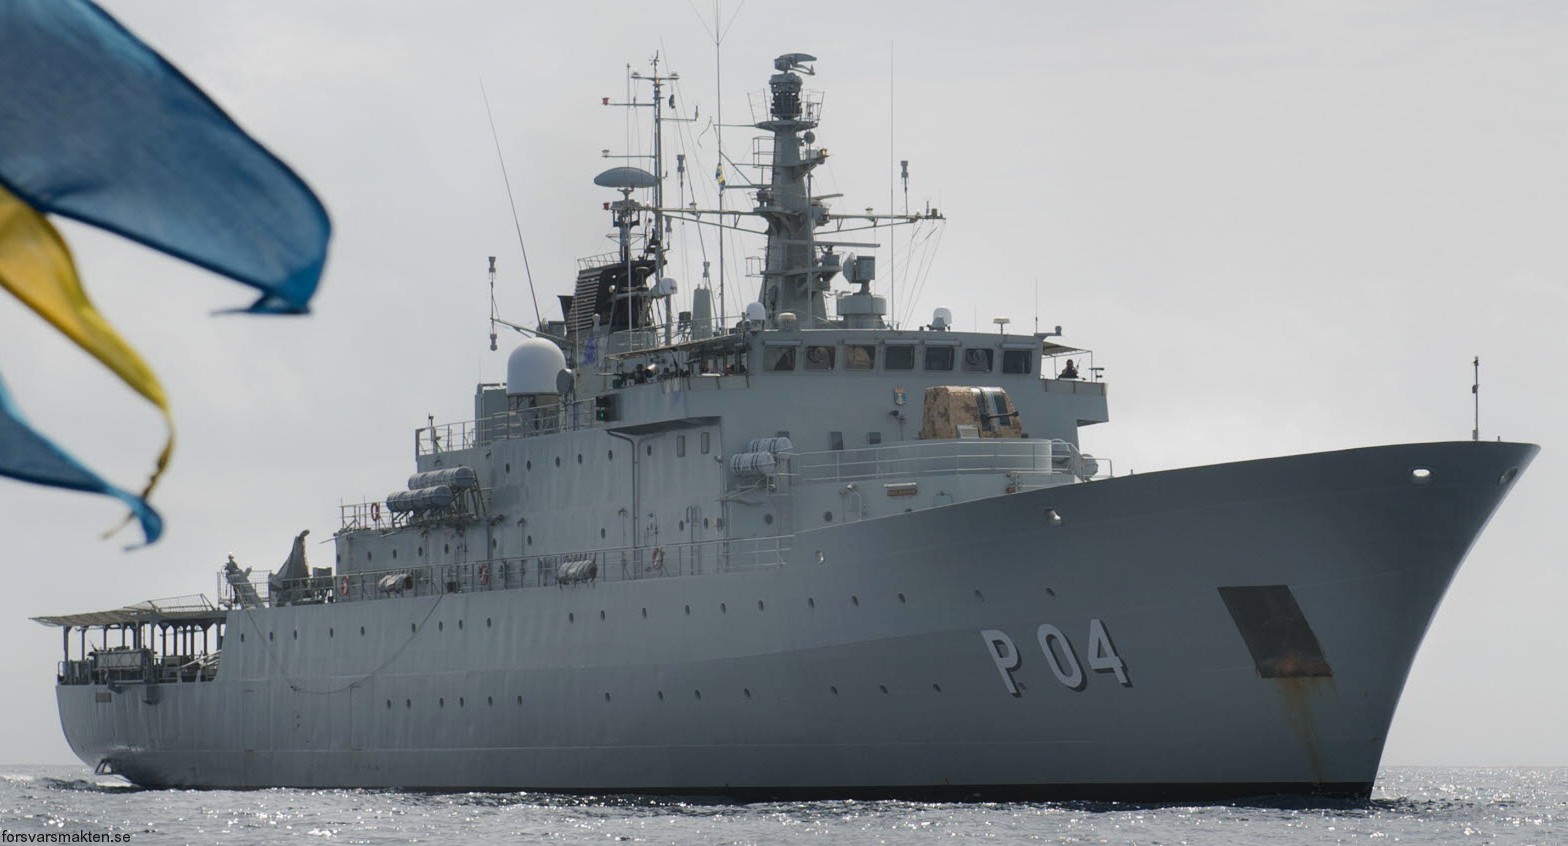 p04 hswms carlskrona hms ocean patrol vessel opv swedish navy svenska marinen försvarsmakten 08x karlskronavarvet kockums